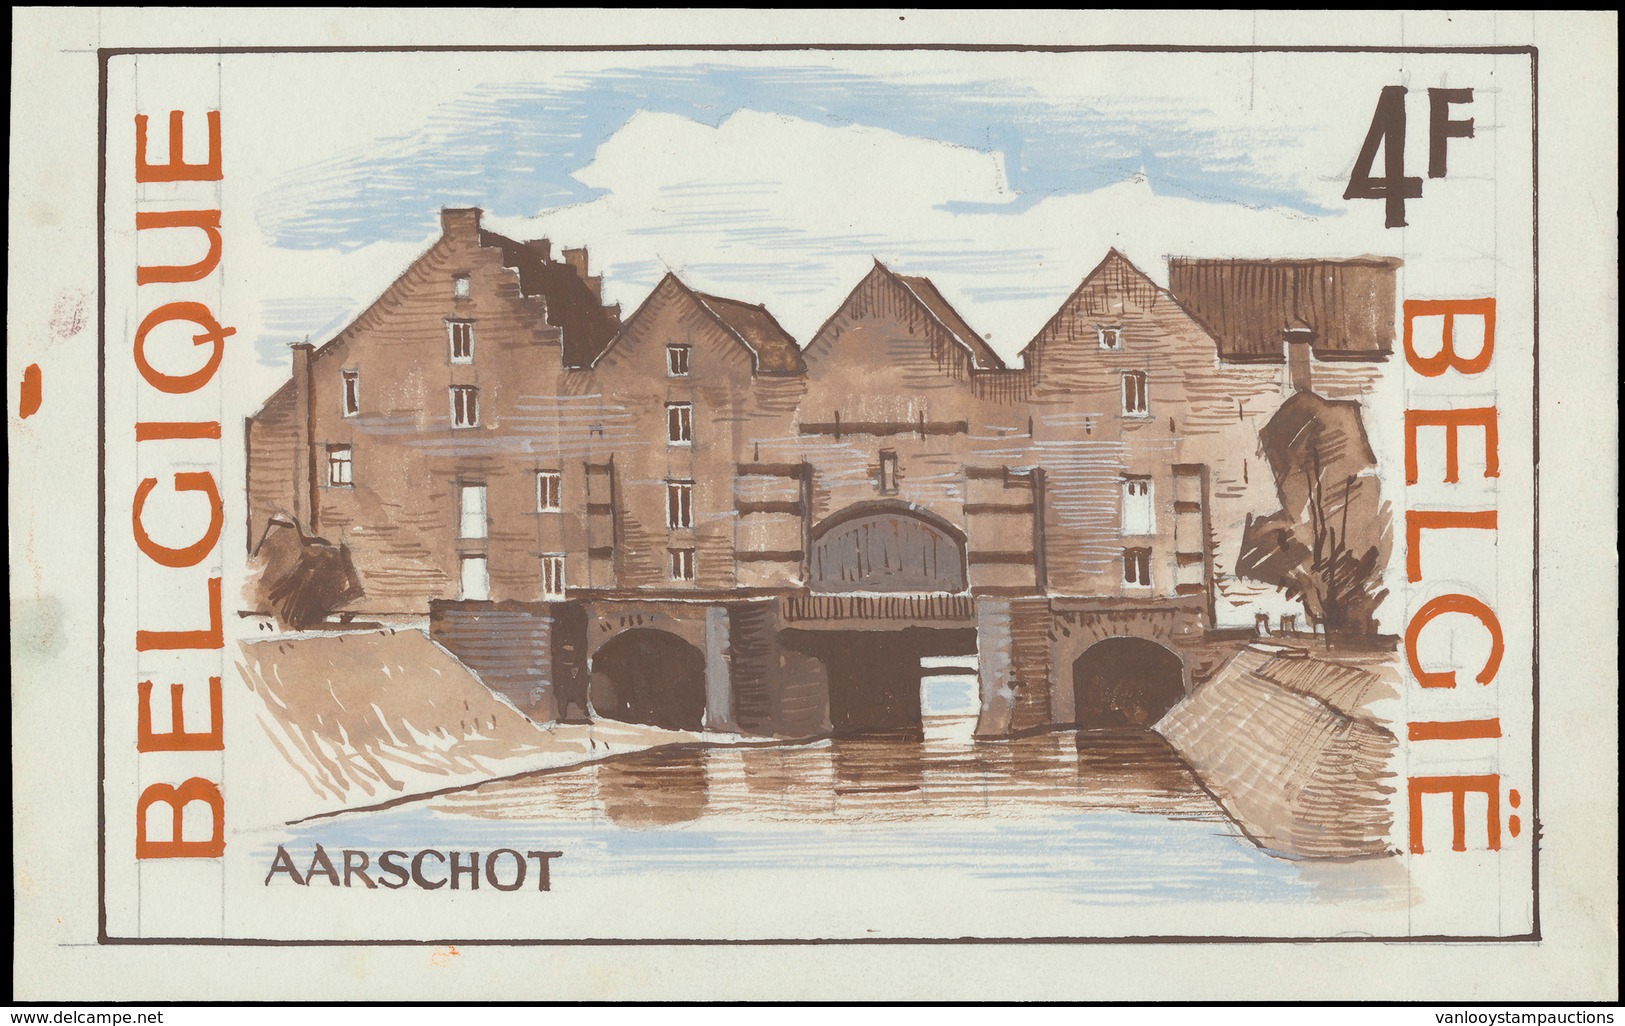 Type N° 1734 'Aarschot' Niet A - Proofs & Reprints